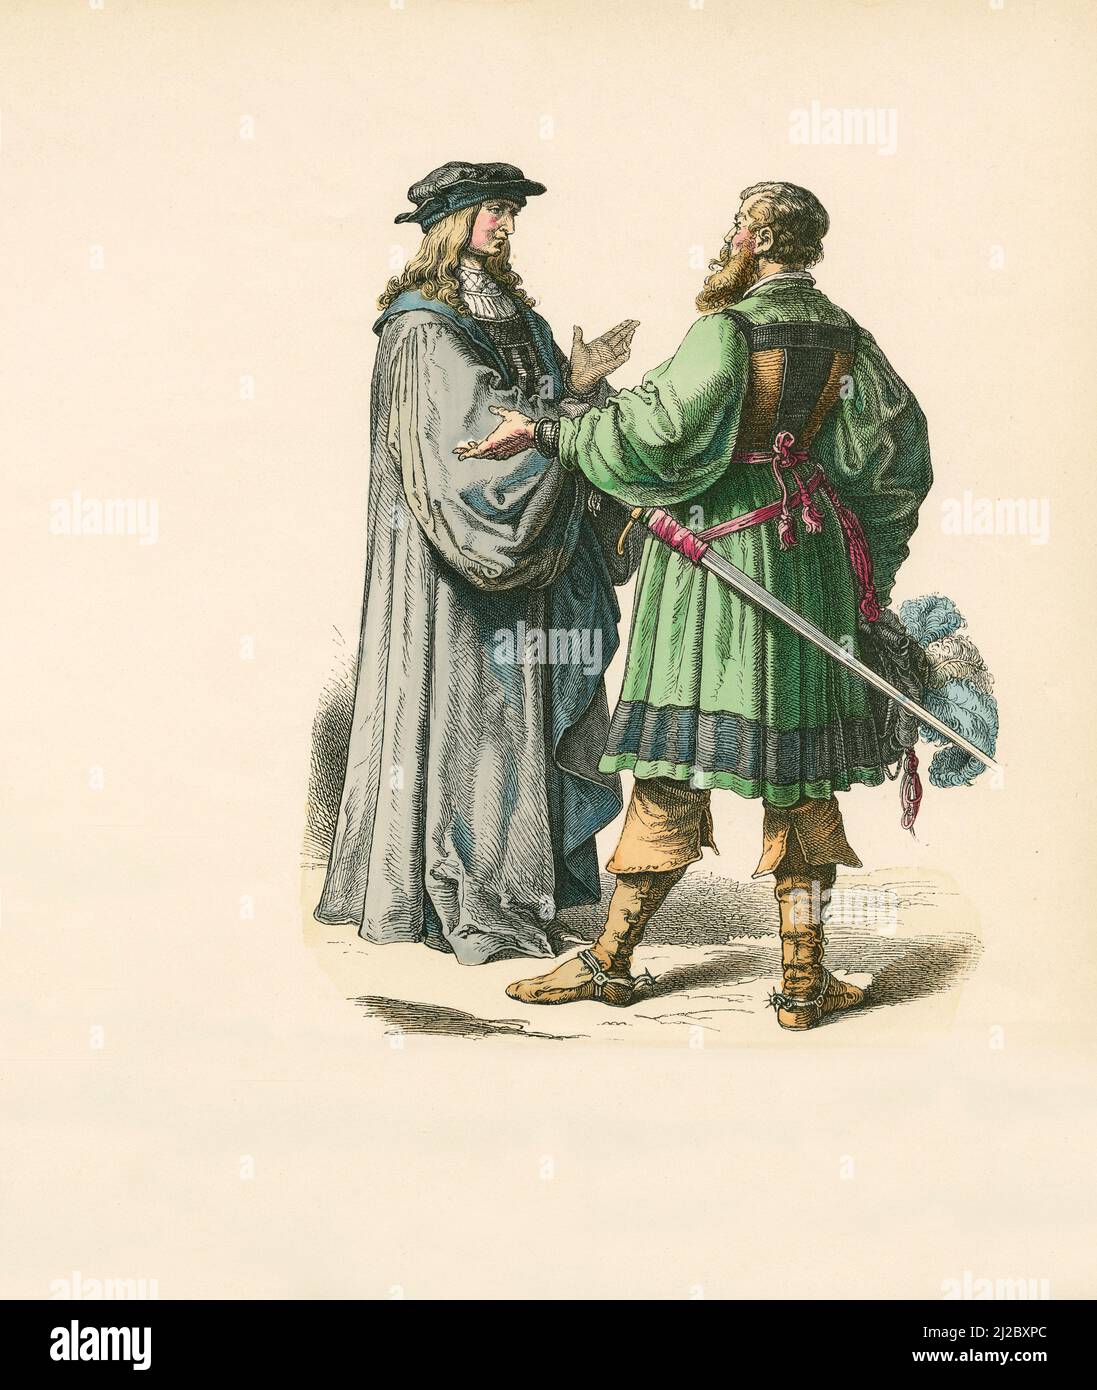 Magistrat et chevalier allemands, premier tiers du 16th siècle, Illustration, l'histoire du costume, Braun & Schneider, Munich, Allemagne, 1861-1880 Banque D'Images